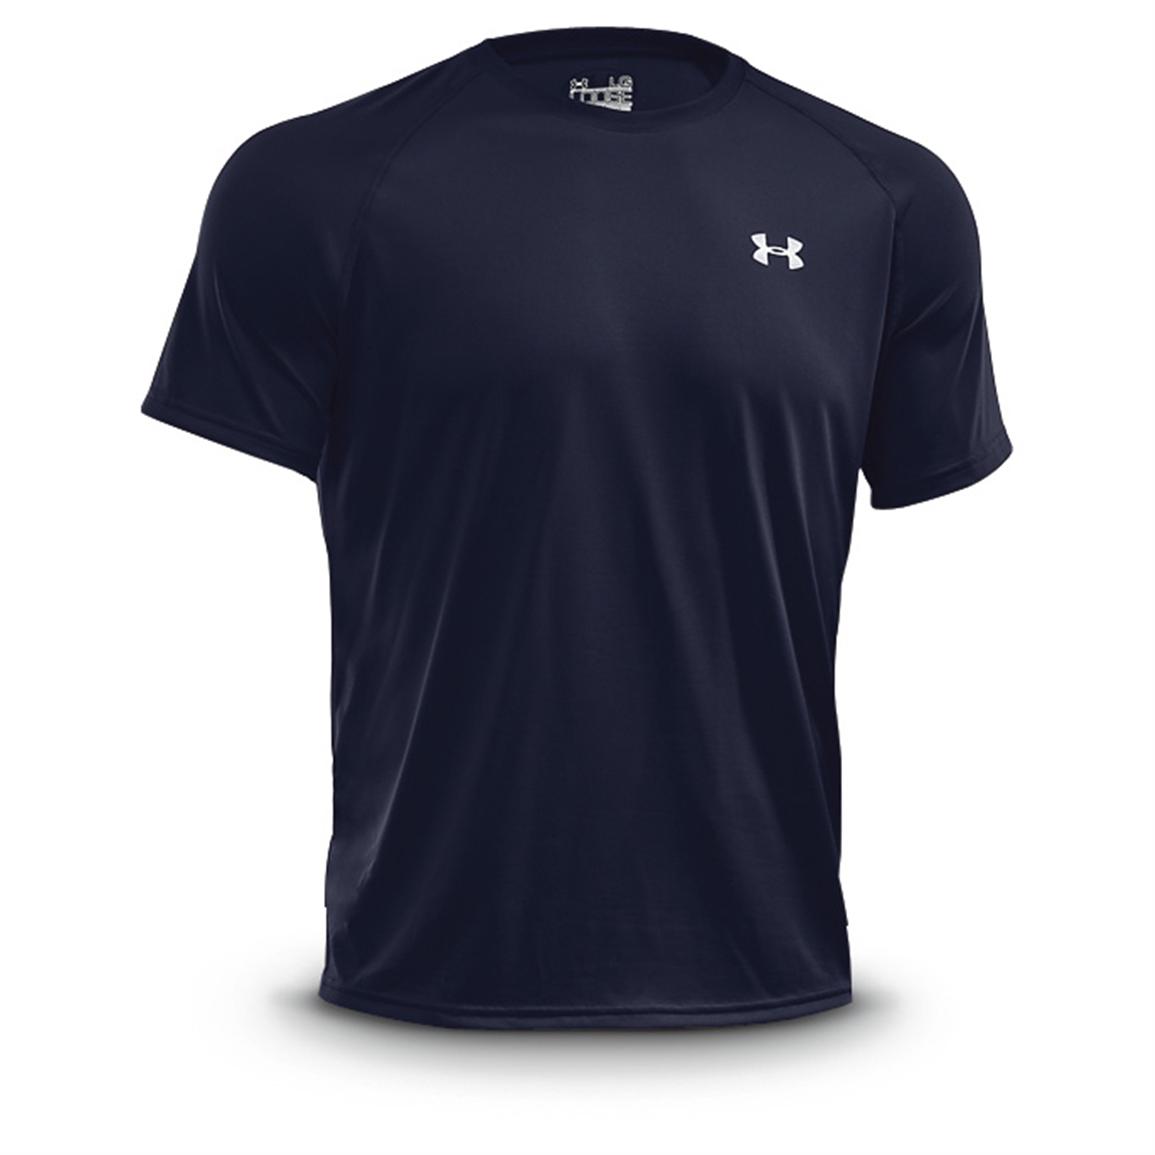 Browning Men's Sleeveless Graphic T-Shirt - 666185, T-Shirts at ...